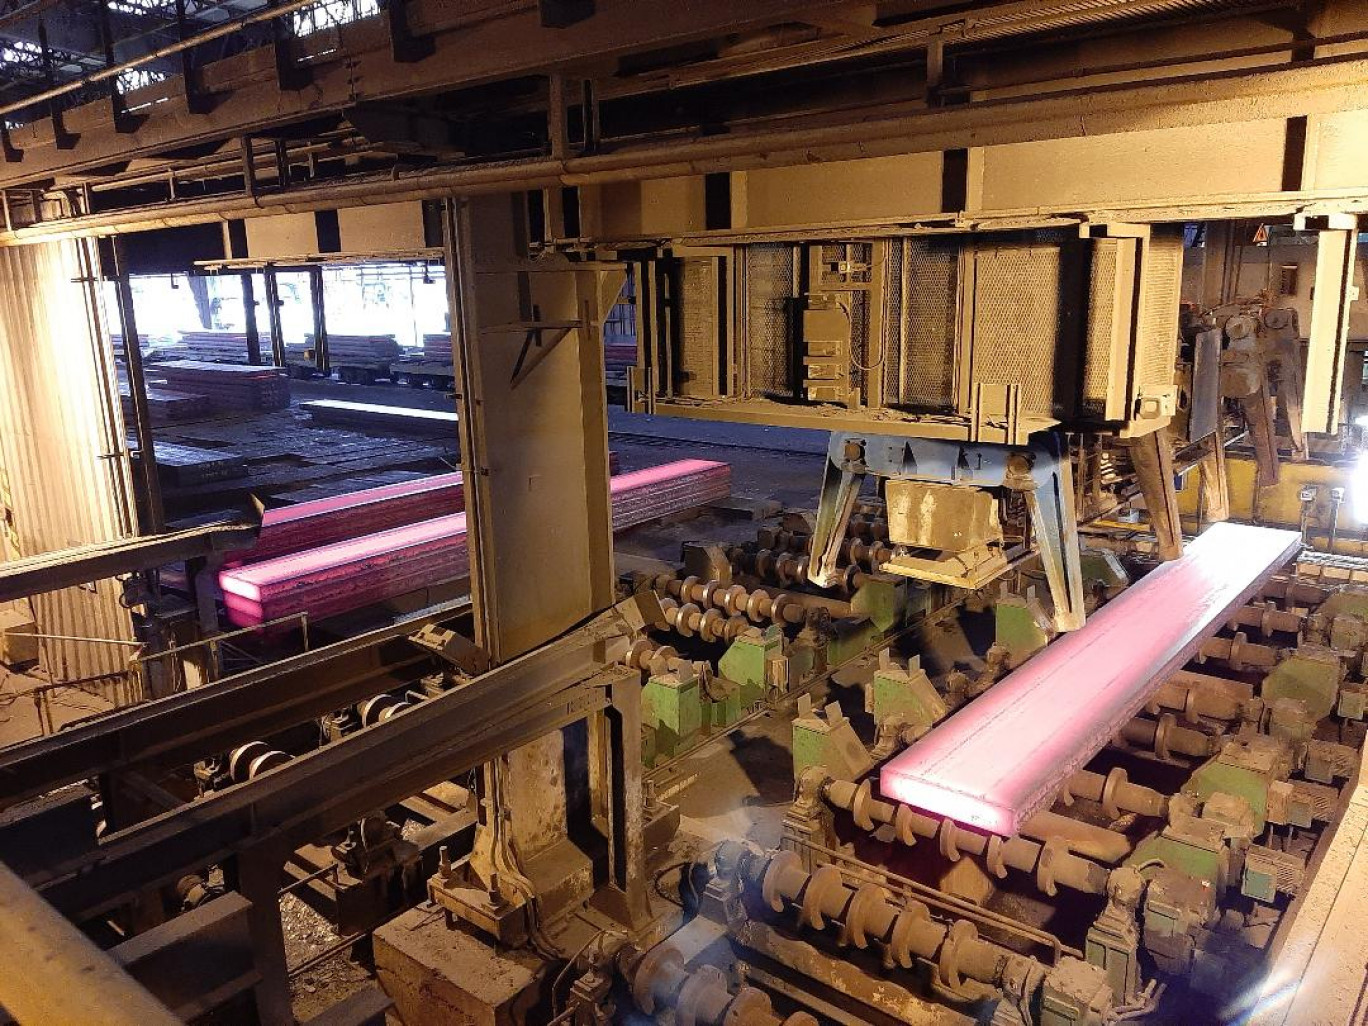 ArcelorMittal, déjà engagé dans un gros projet de réduction de ses émissions de gaz à effet de serre grâce à l'utilisation de l'hydrogène pour réduire le minerai de fer, pourrait voir ses émissions encore diminuer grâce au projet Reuze. 